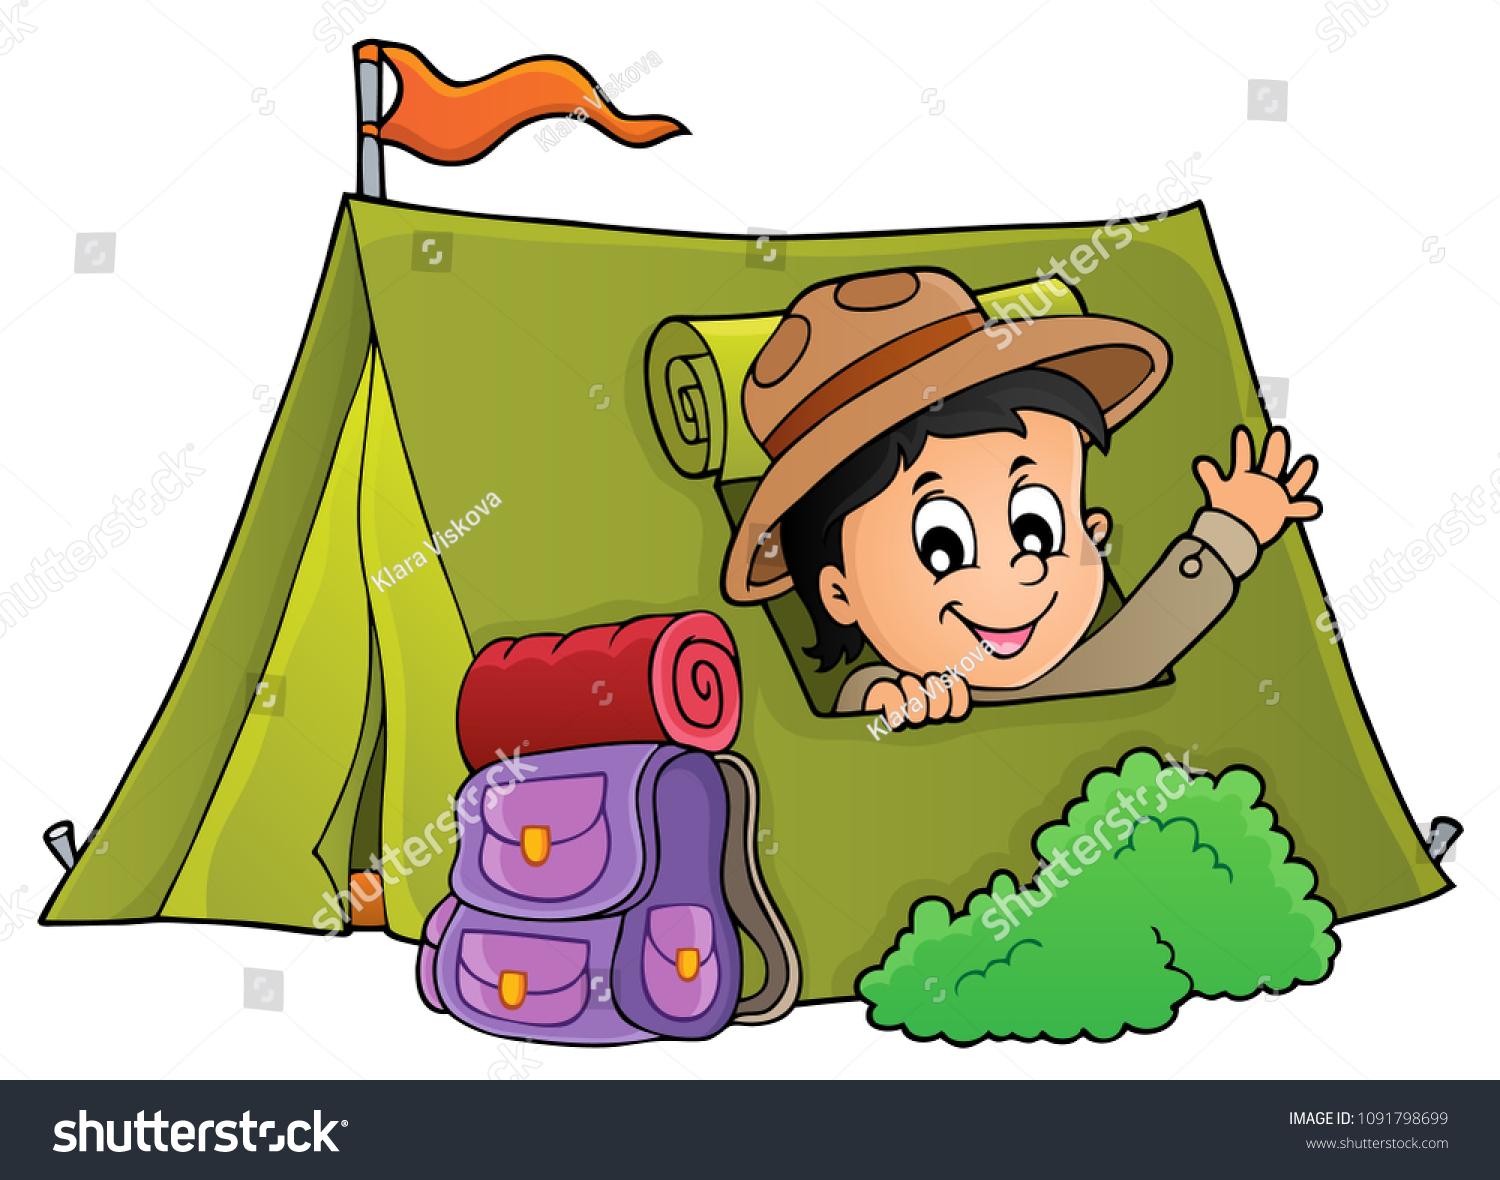 Поход с палатками с детьми